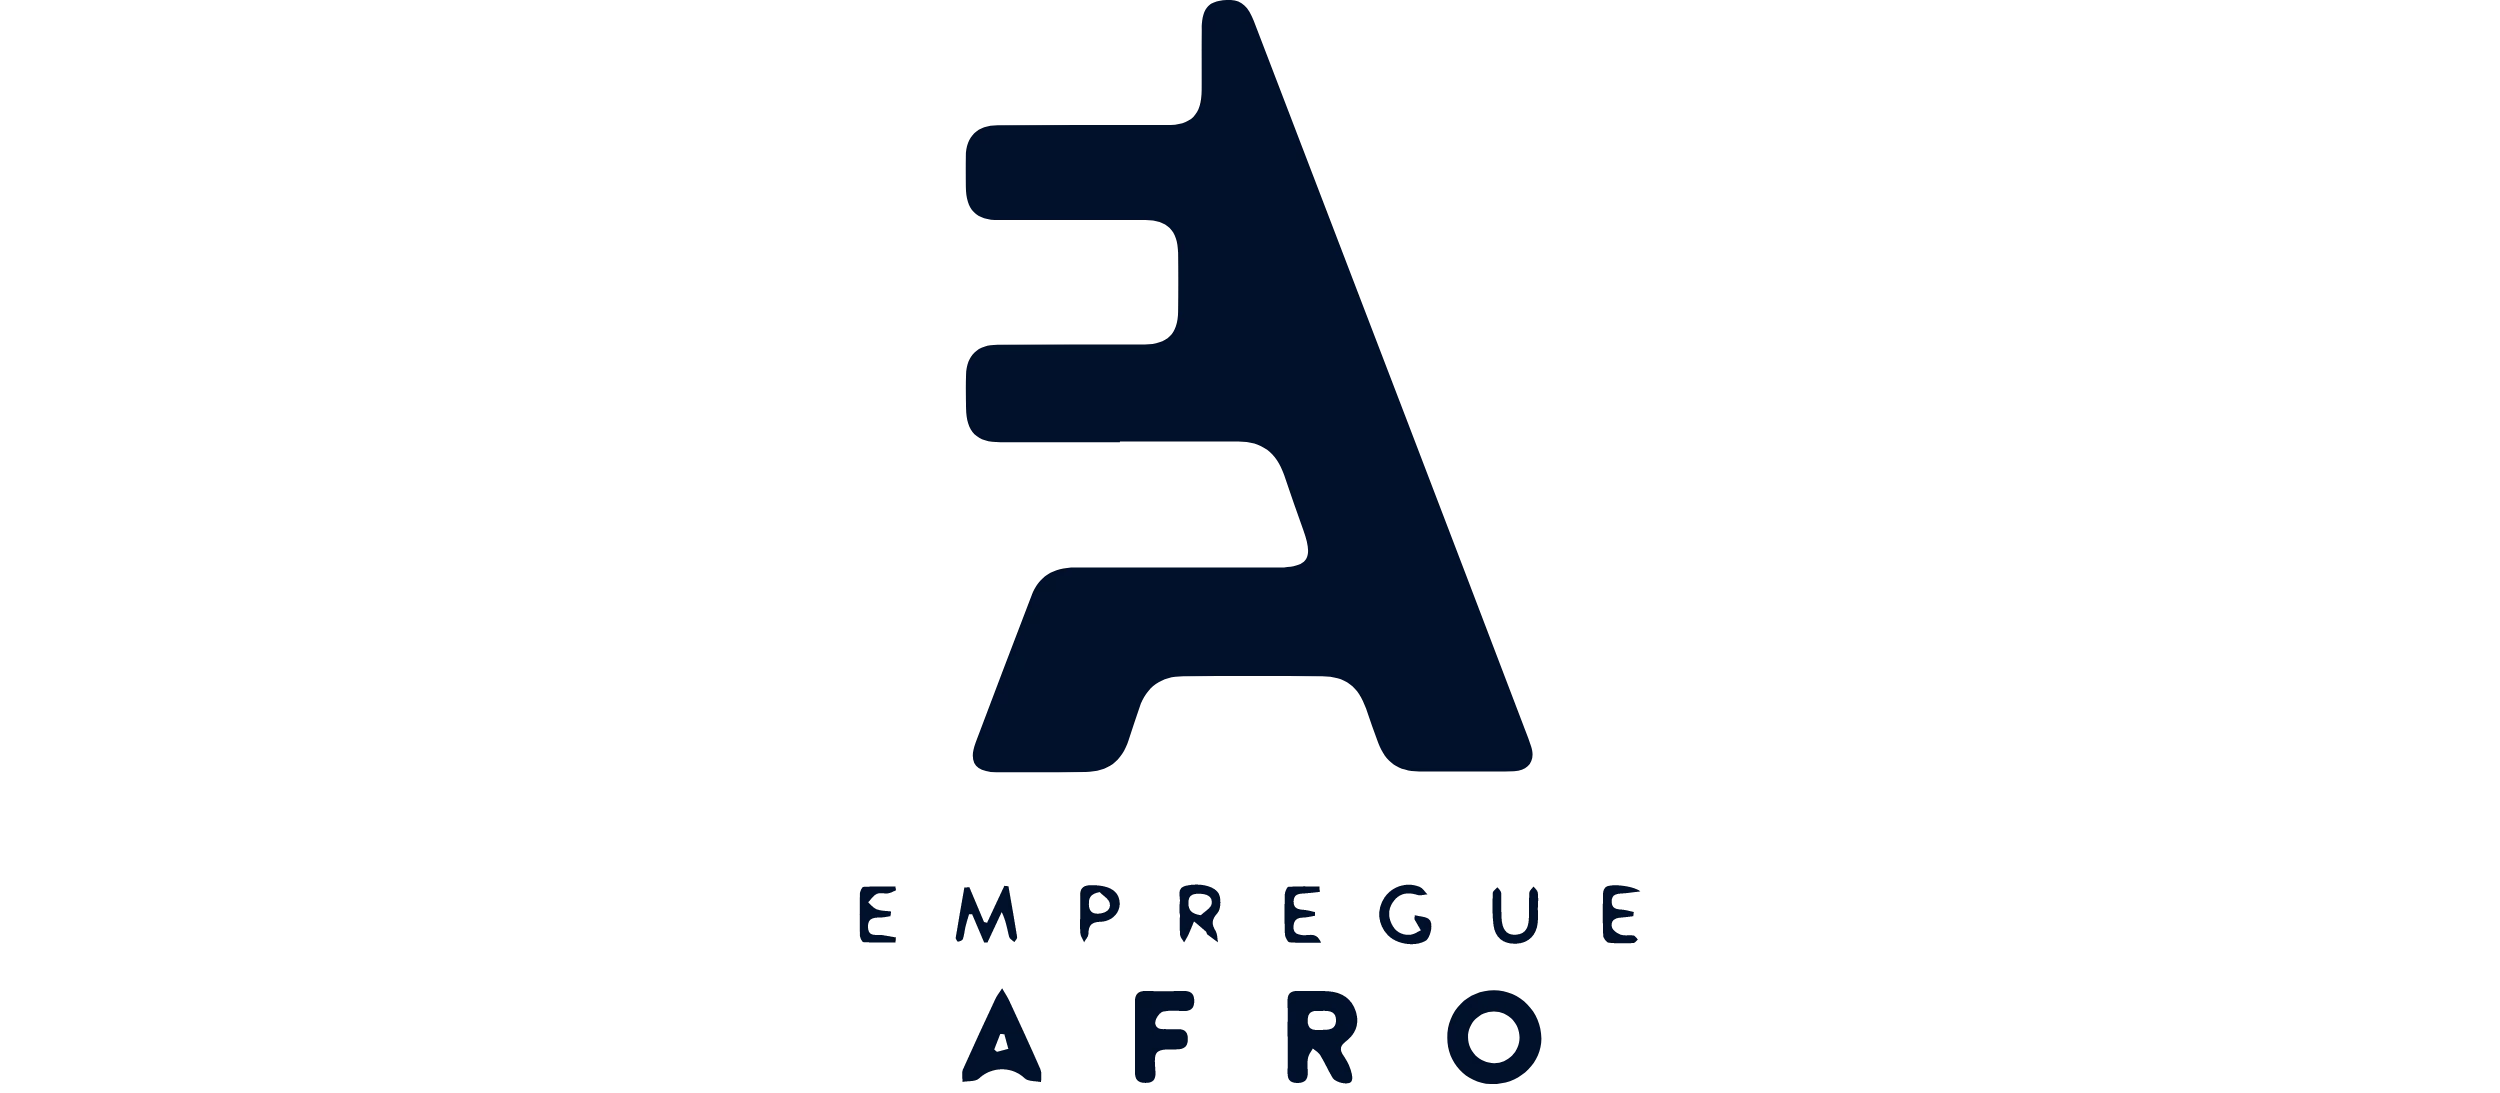 Empegue Afro logo